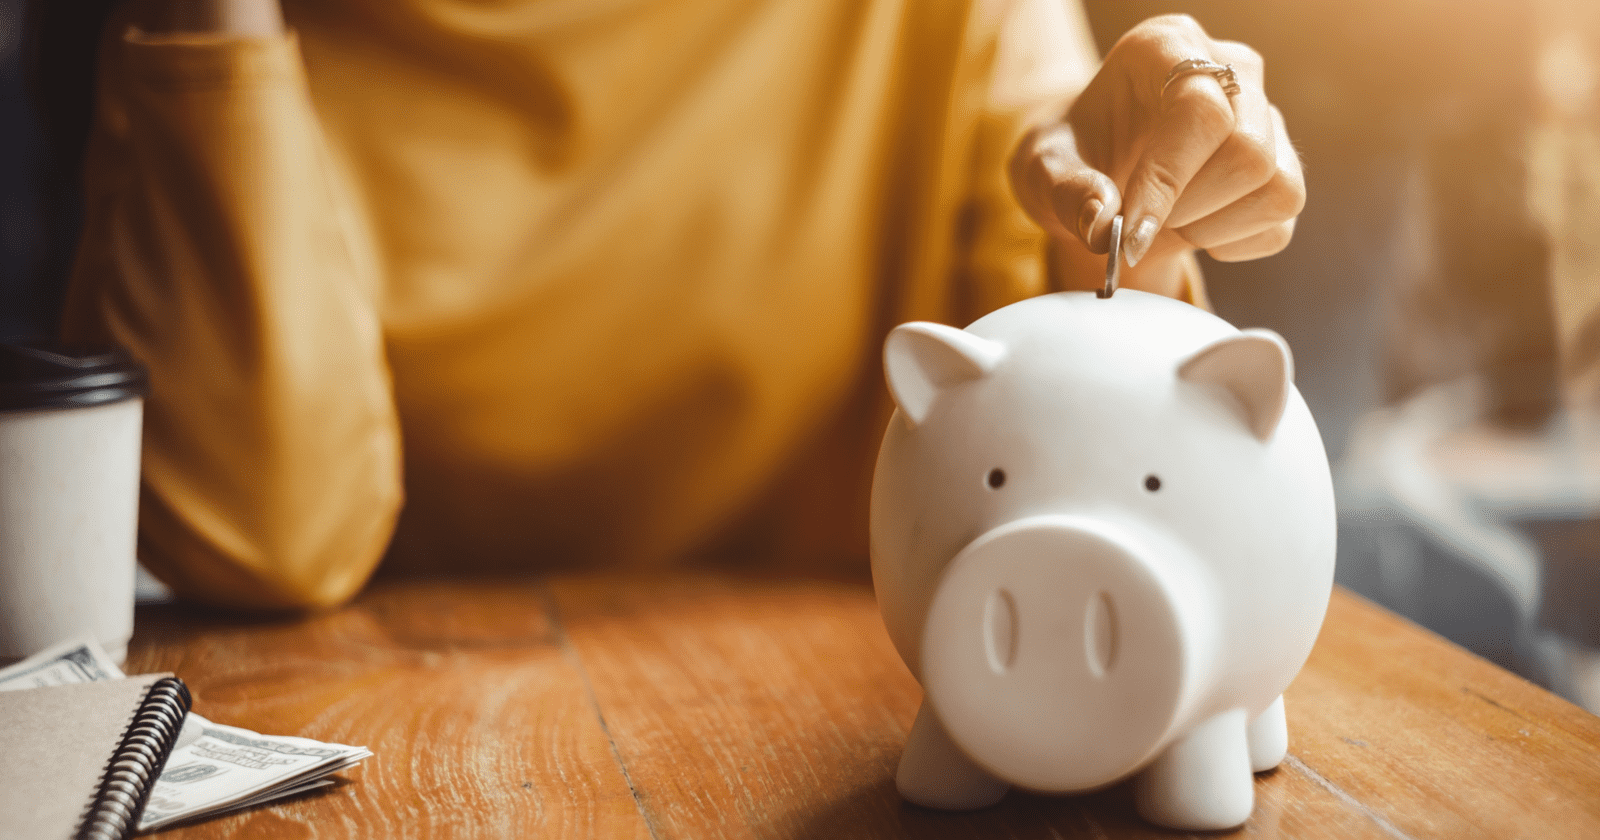 Piggy Bank 2 tirelire cochon économies finances